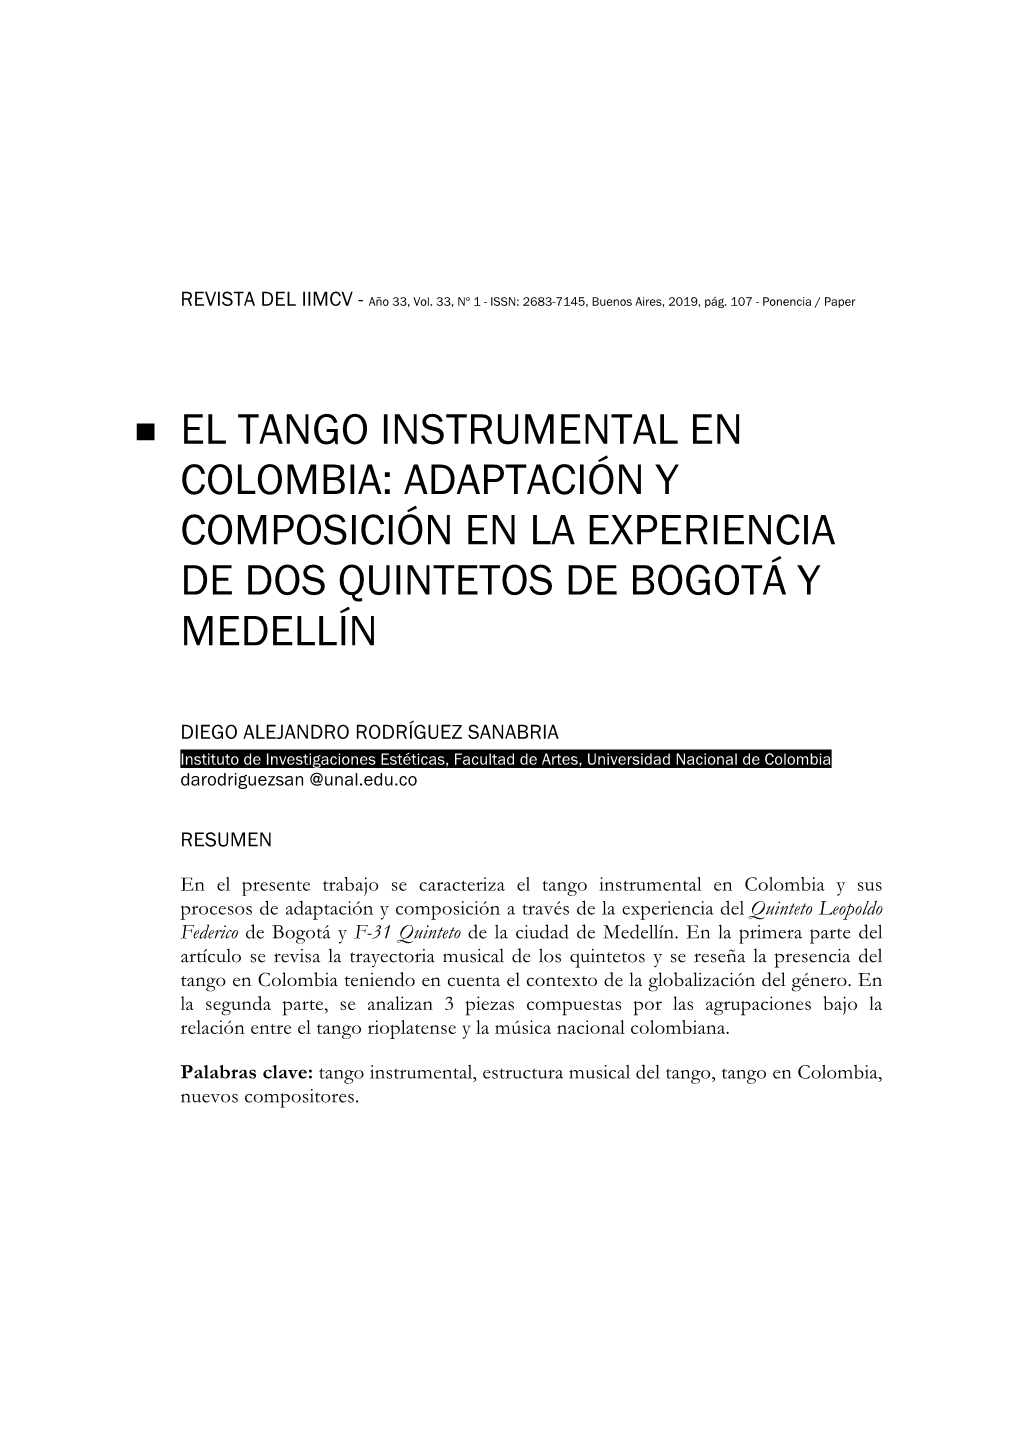 El Tango Instrumental En Colombia: Adaptación Y Composición En La Experiencia De Dos Quintetos De Bogotá Y